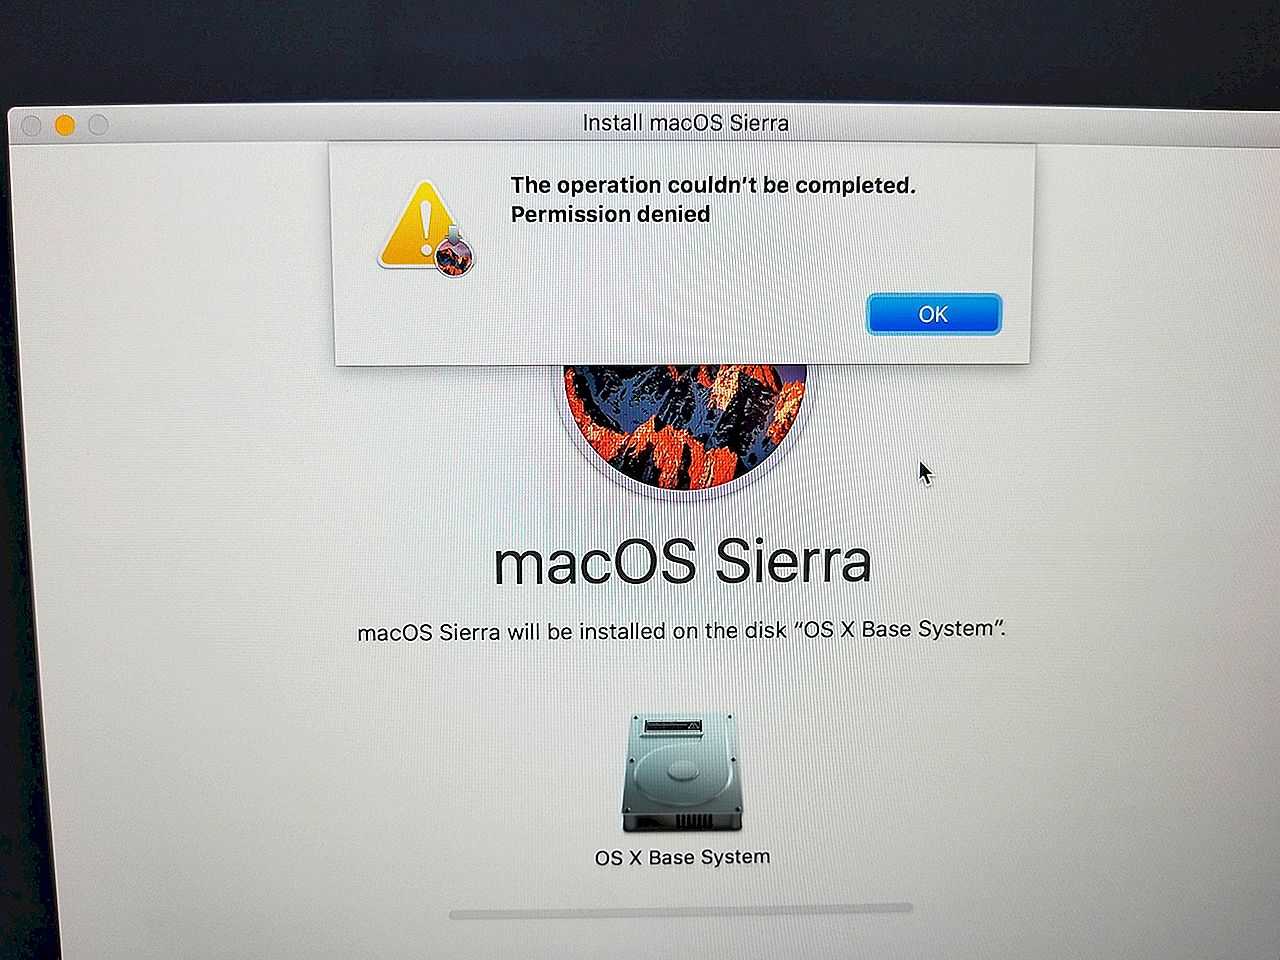 Почему я не могу обновить свой mac? исправляет ошибку при установке macos - технологии и программы